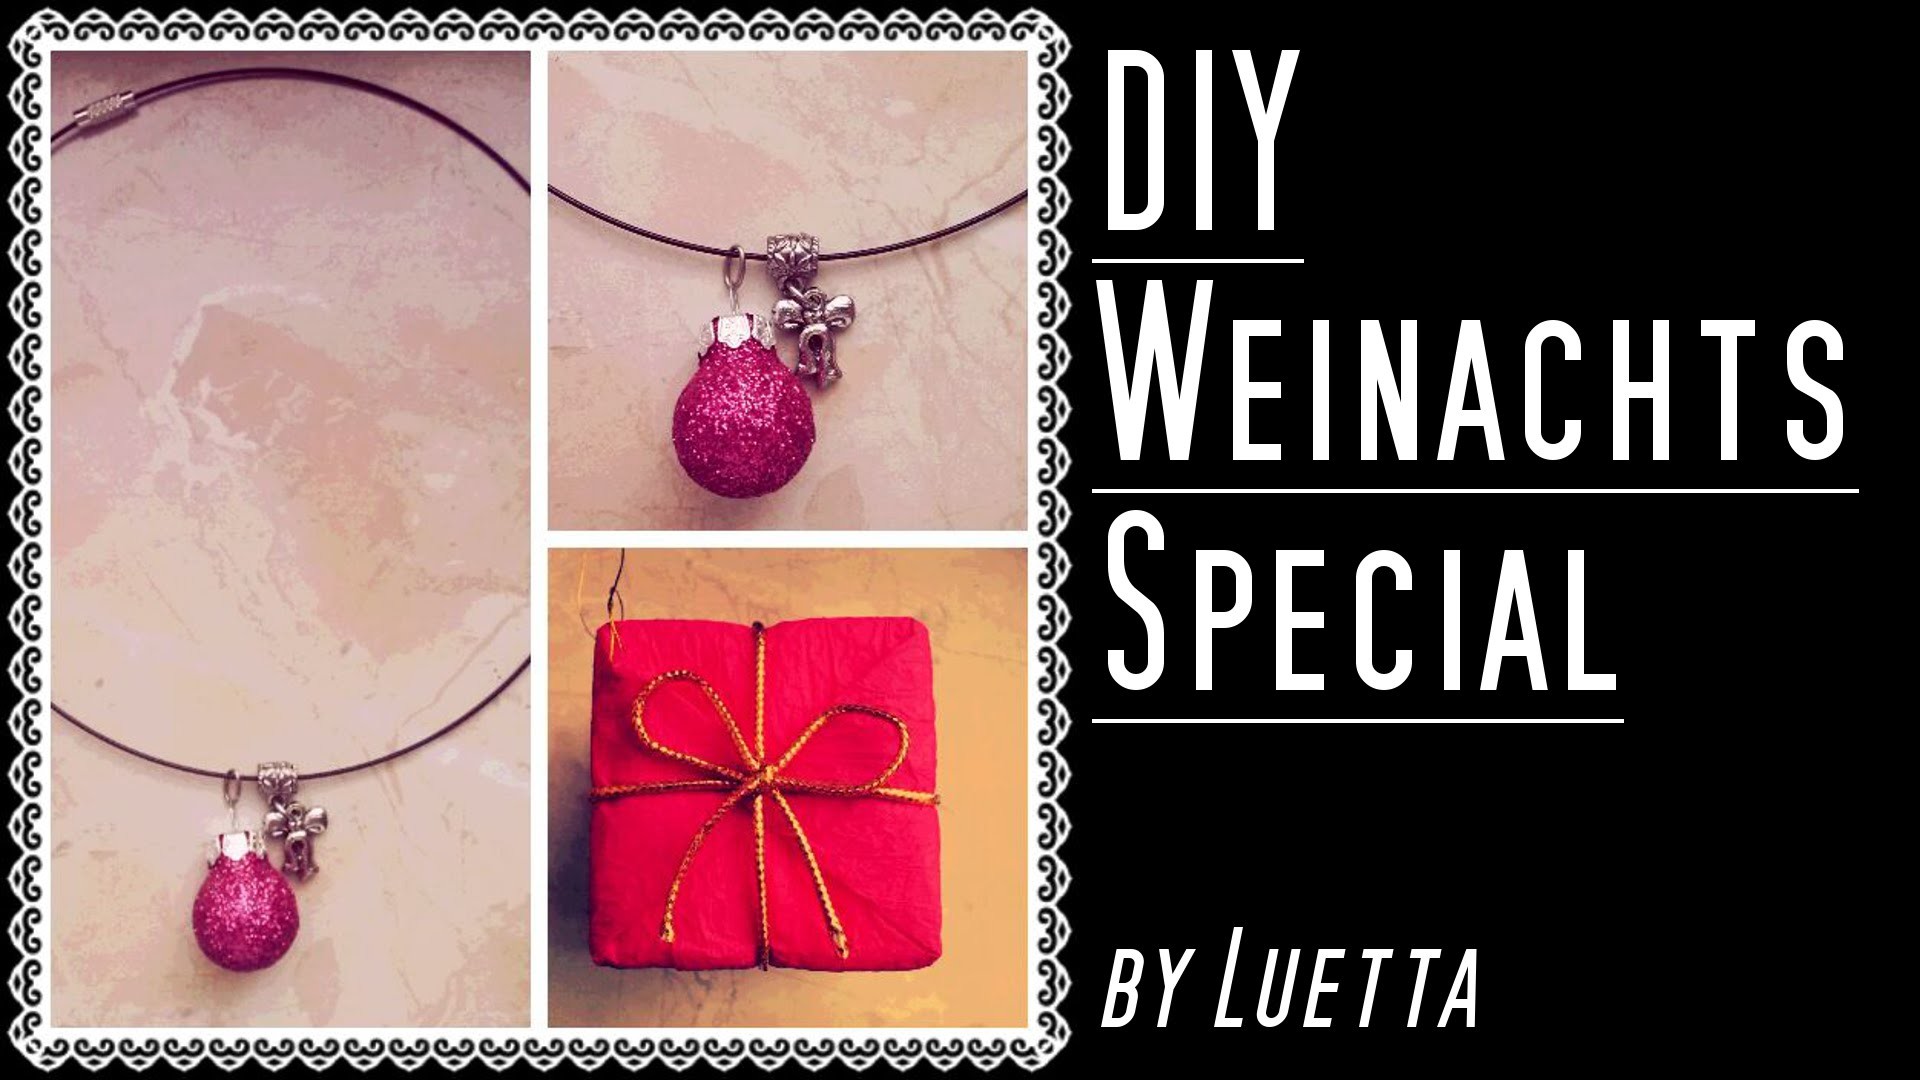 LAST MINUTE WEIHNACHTSGESCHENK - DIY Halskette - Weihnachts Special by Luetta